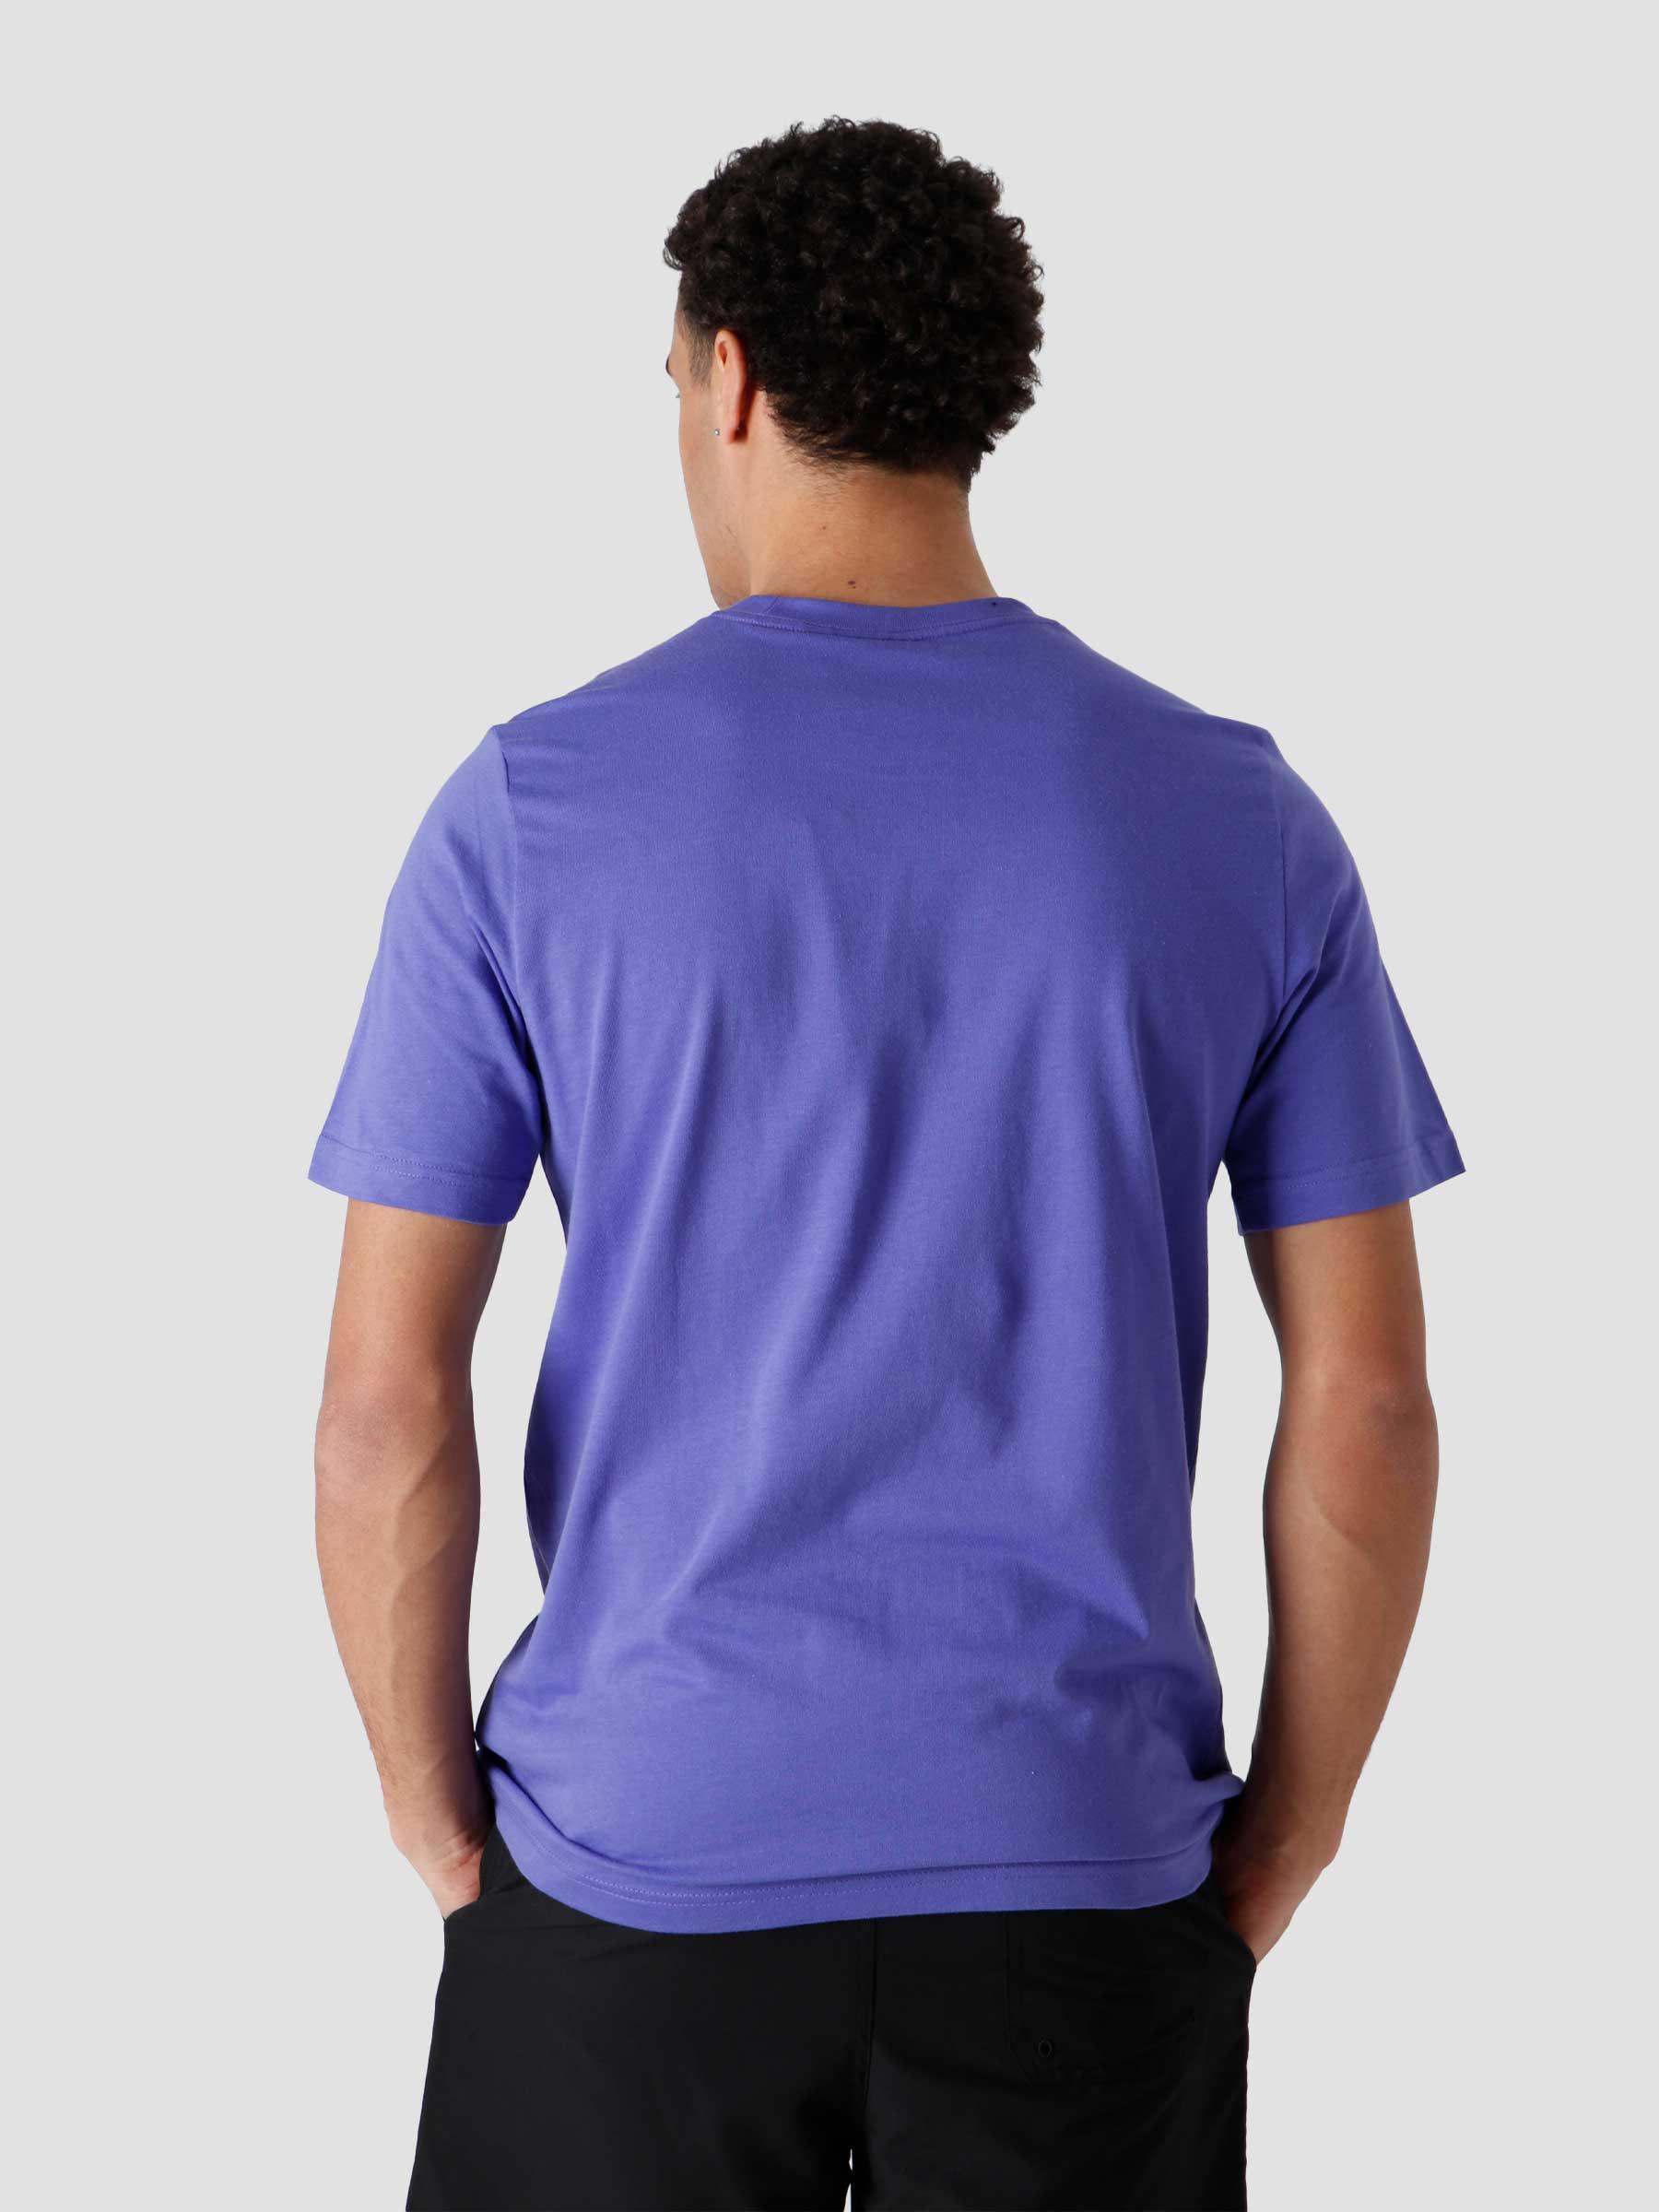 Essential T-Shirts Purple - Freshcotton